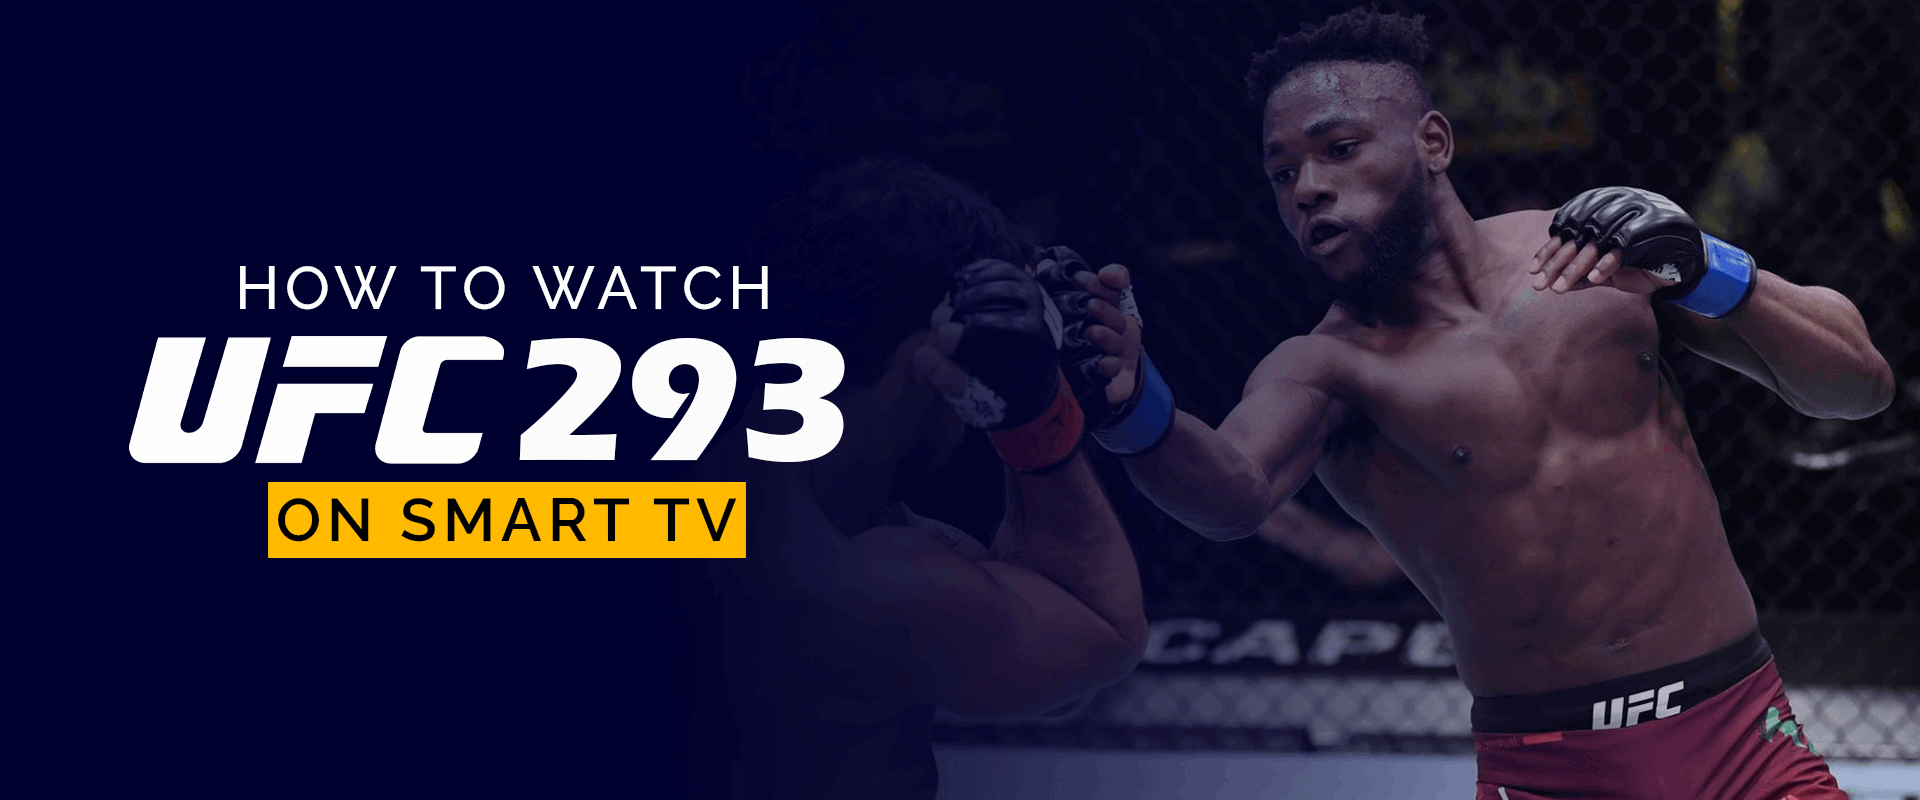 كيفية مشاهدة UFC 293 على التلفزيون الذكي